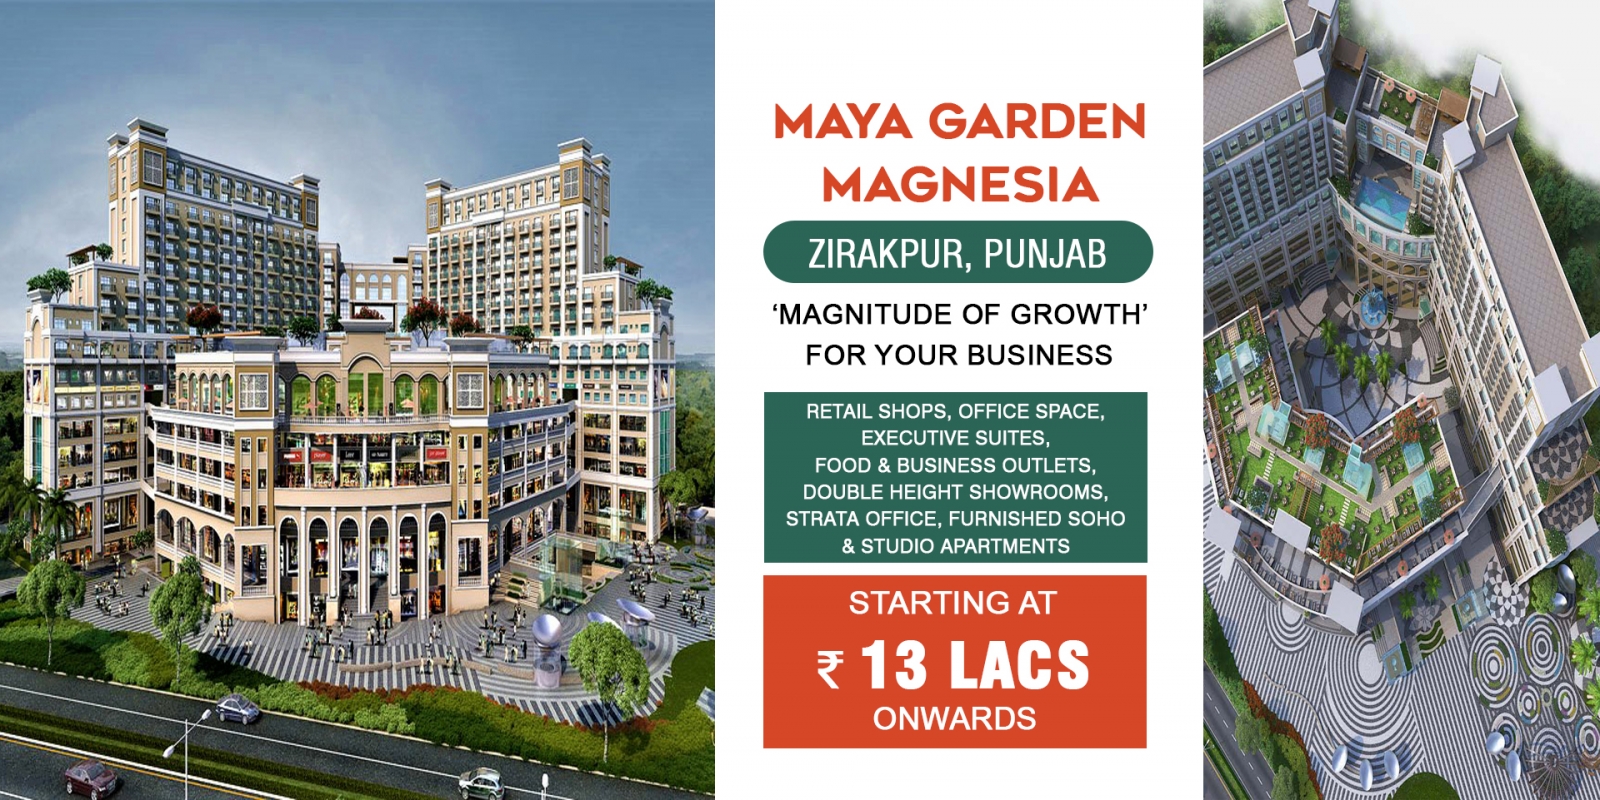 maya garden magnesia zirakpur Chandigarh-Maya Garden Magnesia3.jpg